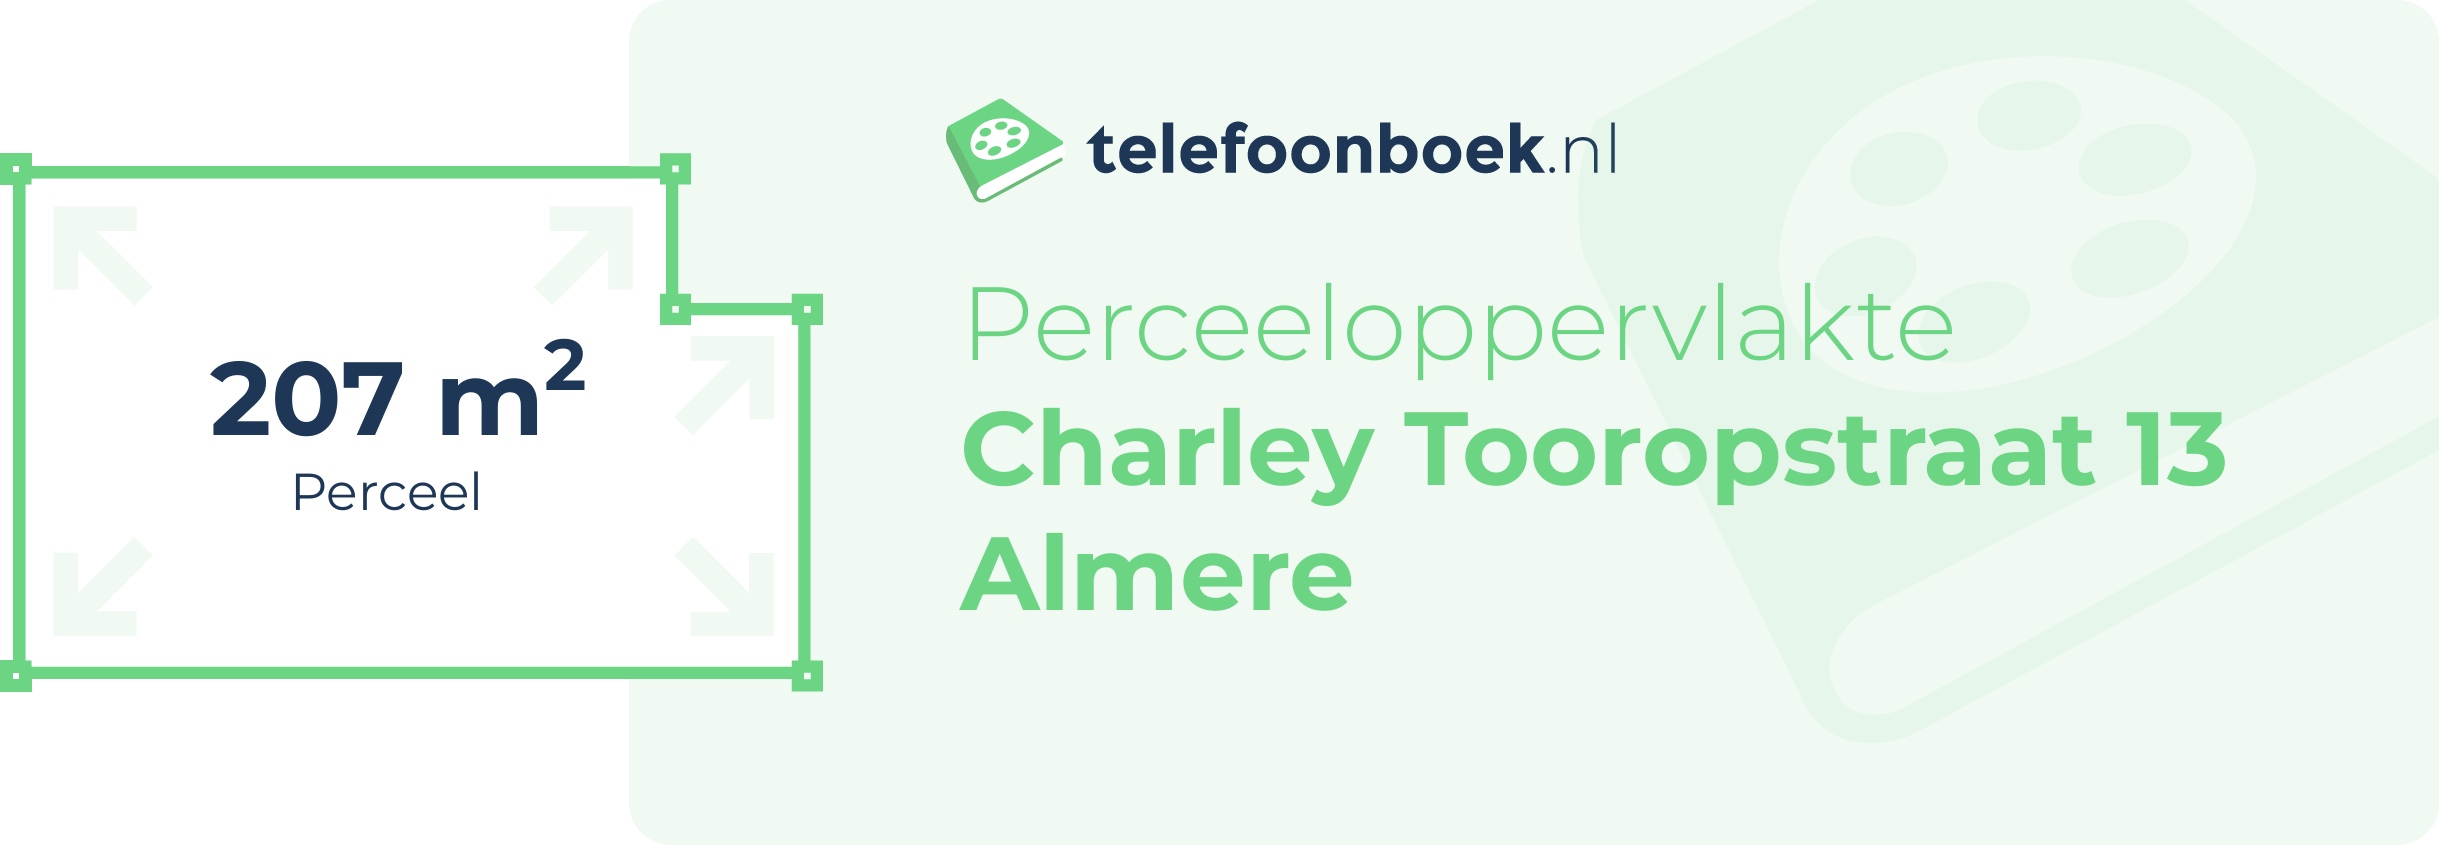 Perceeloppervlakte Charley Tooropstraat 13 Almere